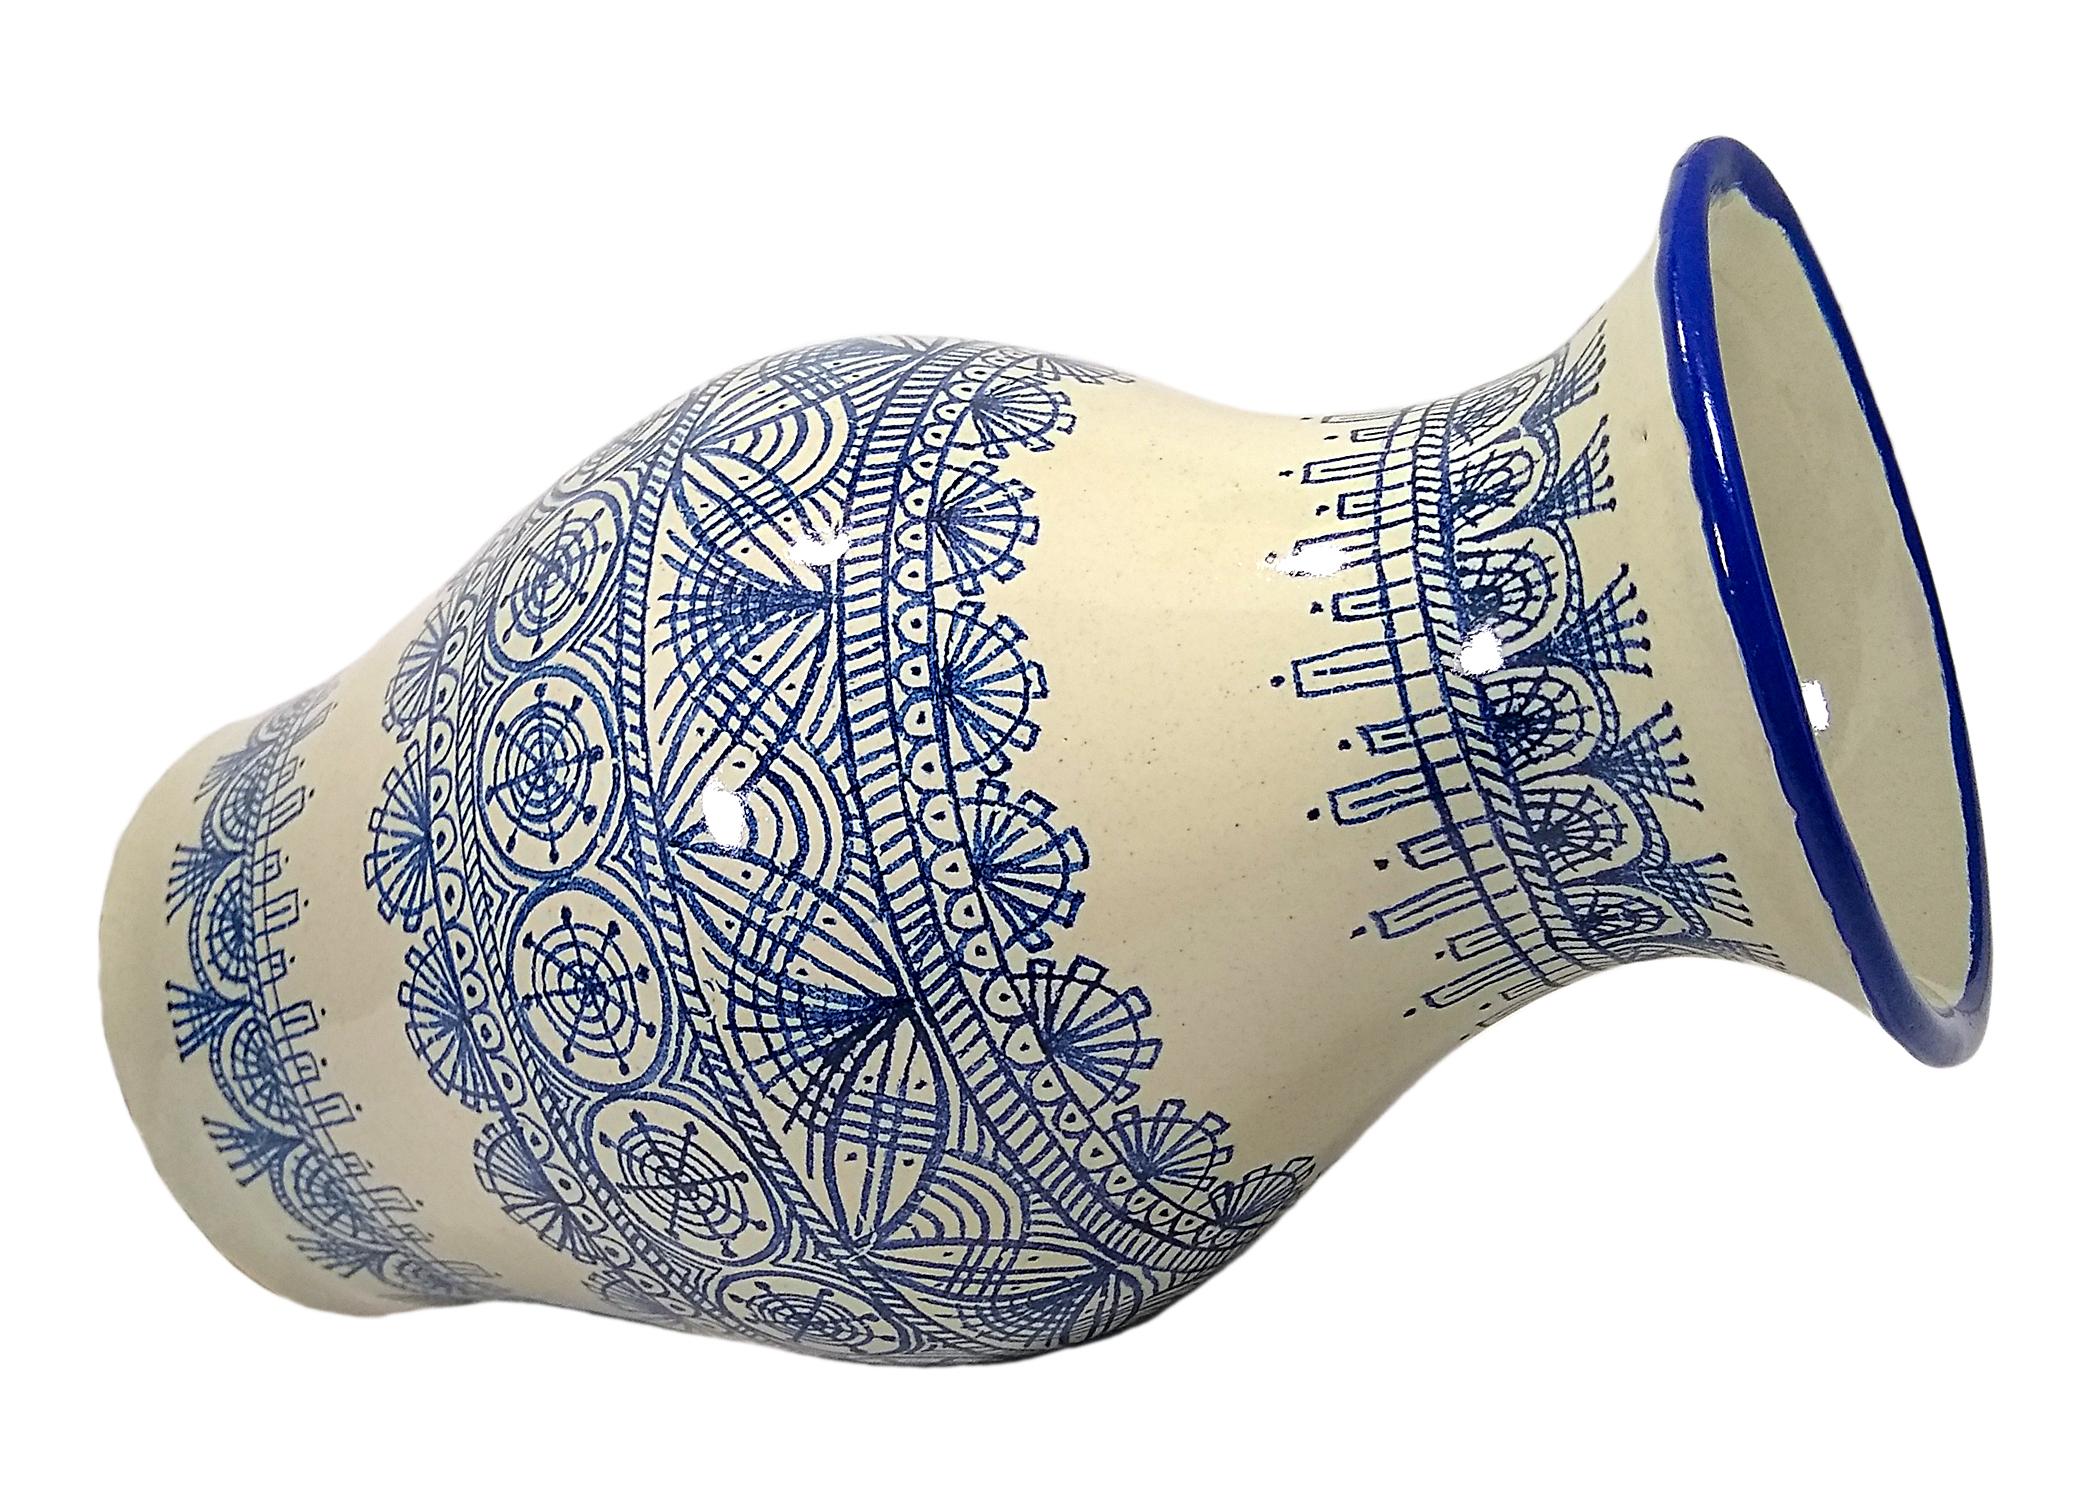 Élégant vase blanc et bleu réalisé selon la technique Talavera. Cesar Torres, artiste, dresse le portrait de l'art colonial du Mexique. 

La Talavera n'est pas une simple céramique peinte : sa décoration exquise est le produit d'un délicat processus